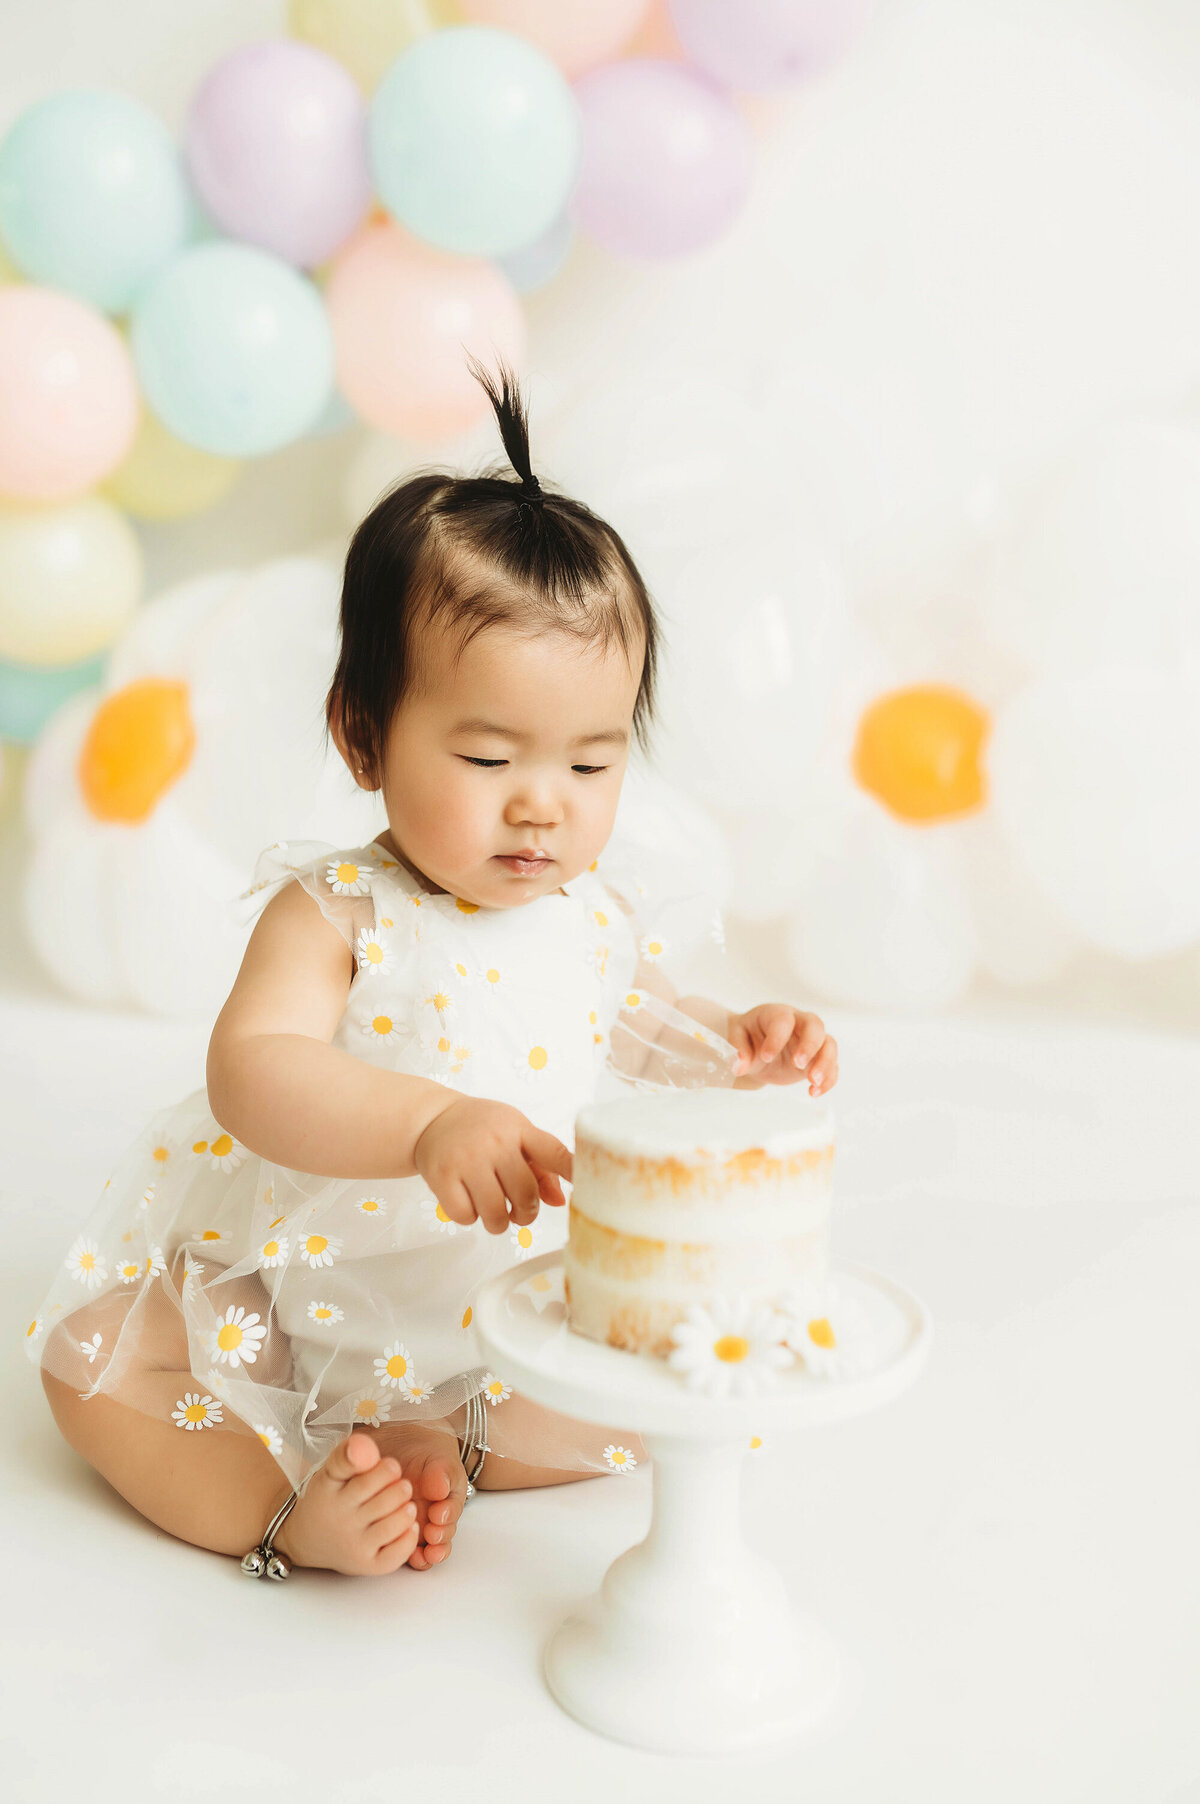 Baby enjoys Cake Smash Photoshoot in Asheville, NC.